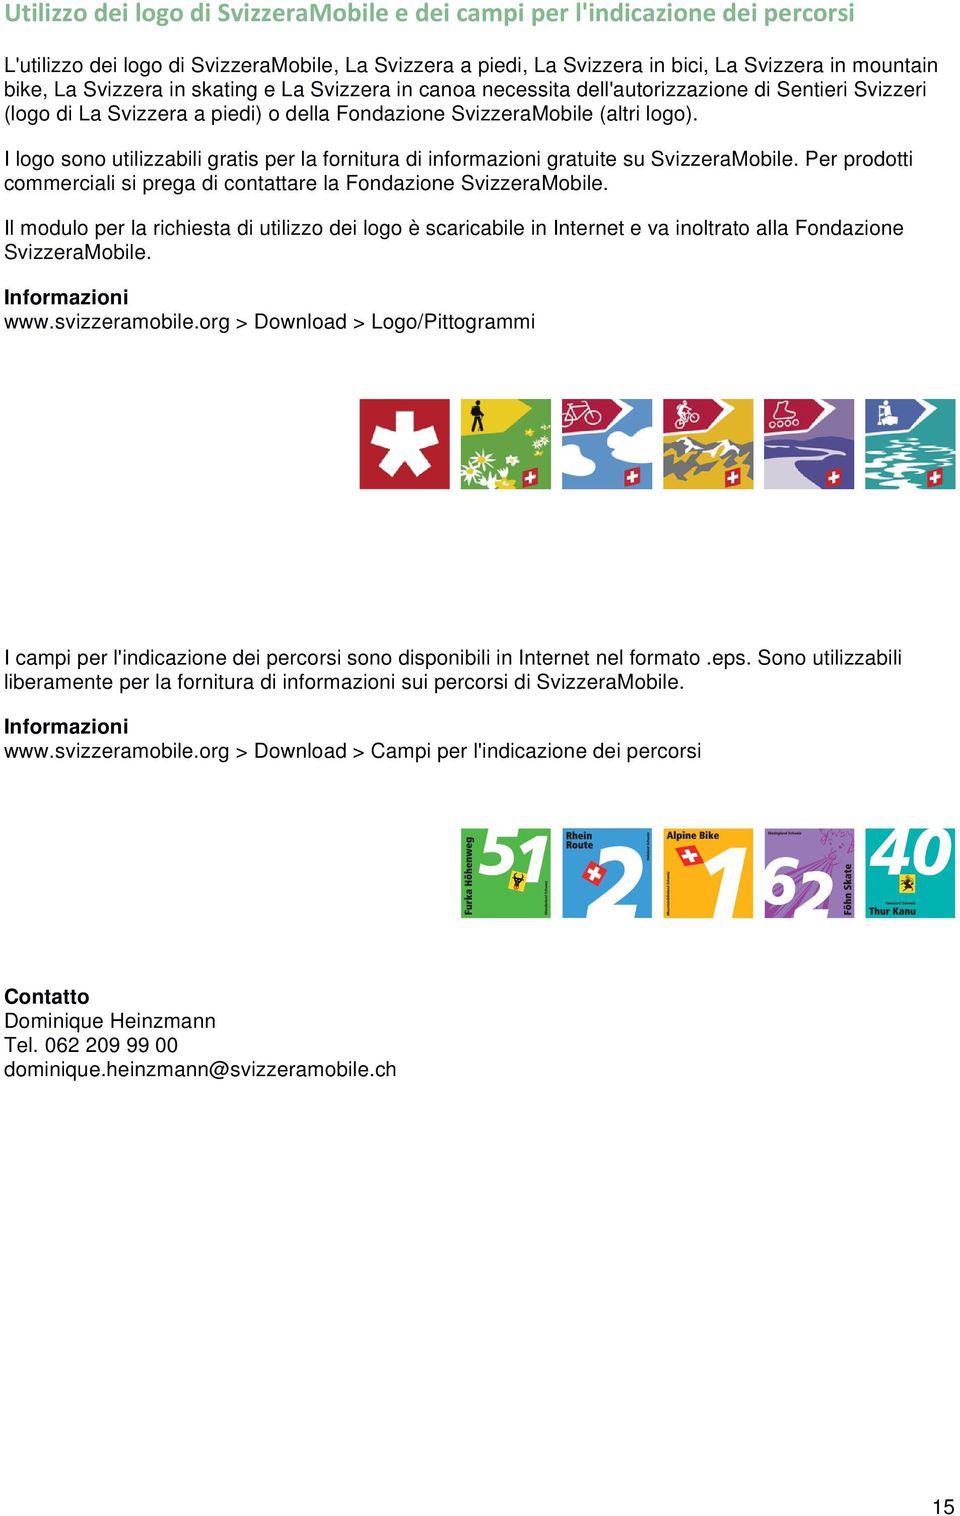 Per prodotti commerciali si prega di contattare la Fondazione SvizzeraMobile. Il modulo per la richiesta di utilizzo dei logo è scaricabile in Internet e va inoltrato alla Fondazione SvizzeraMobile.